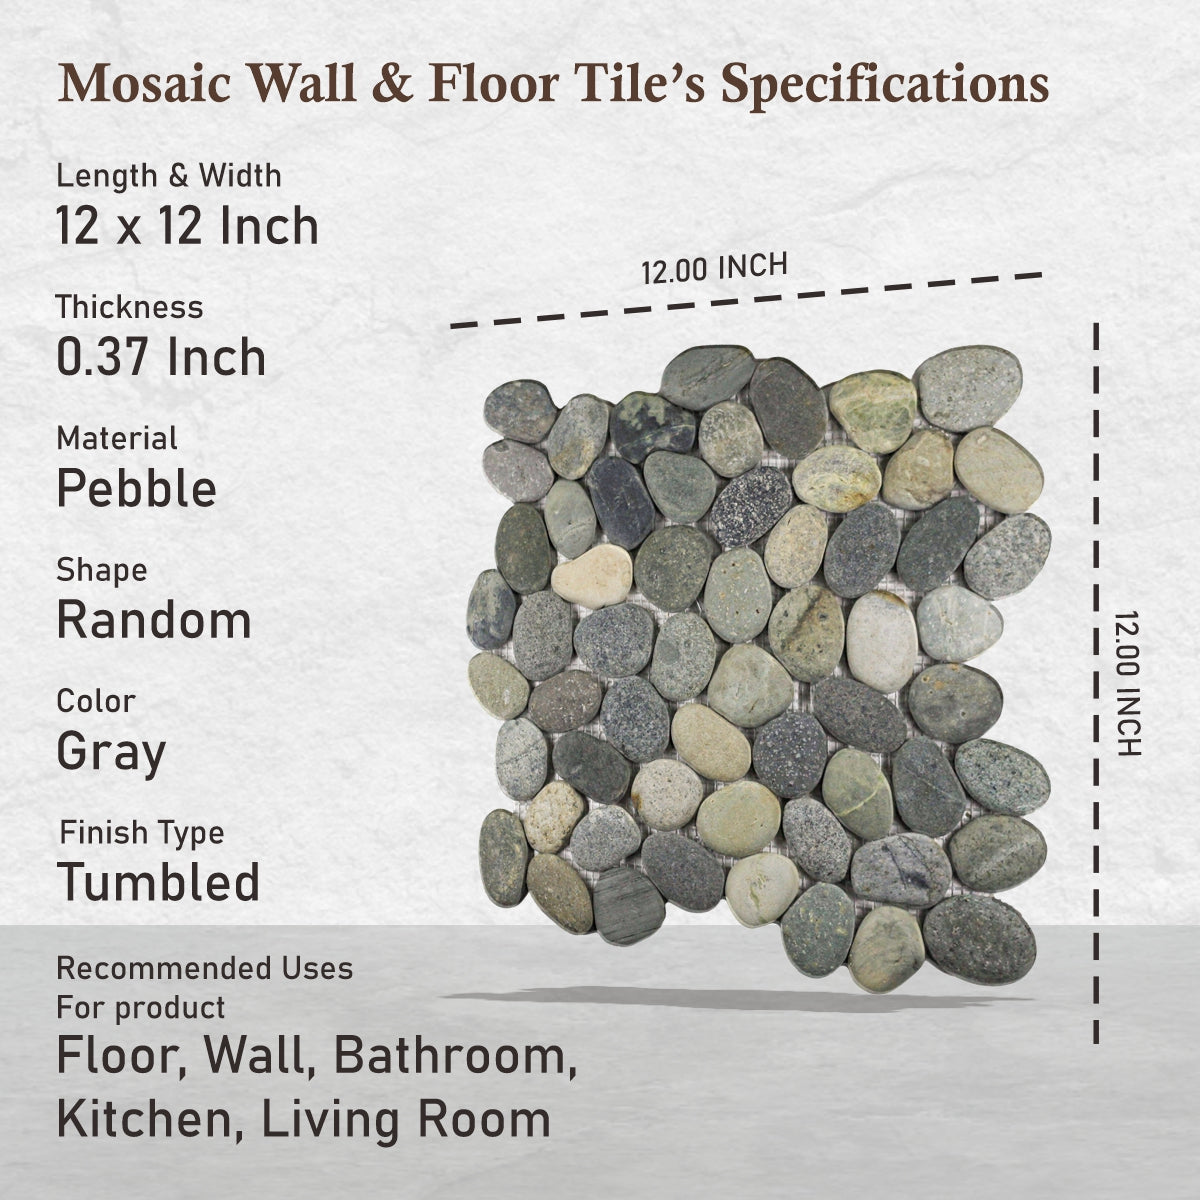 Pebble Mosaic Tile, Earthy Pebble Stone Mosaic Tiles